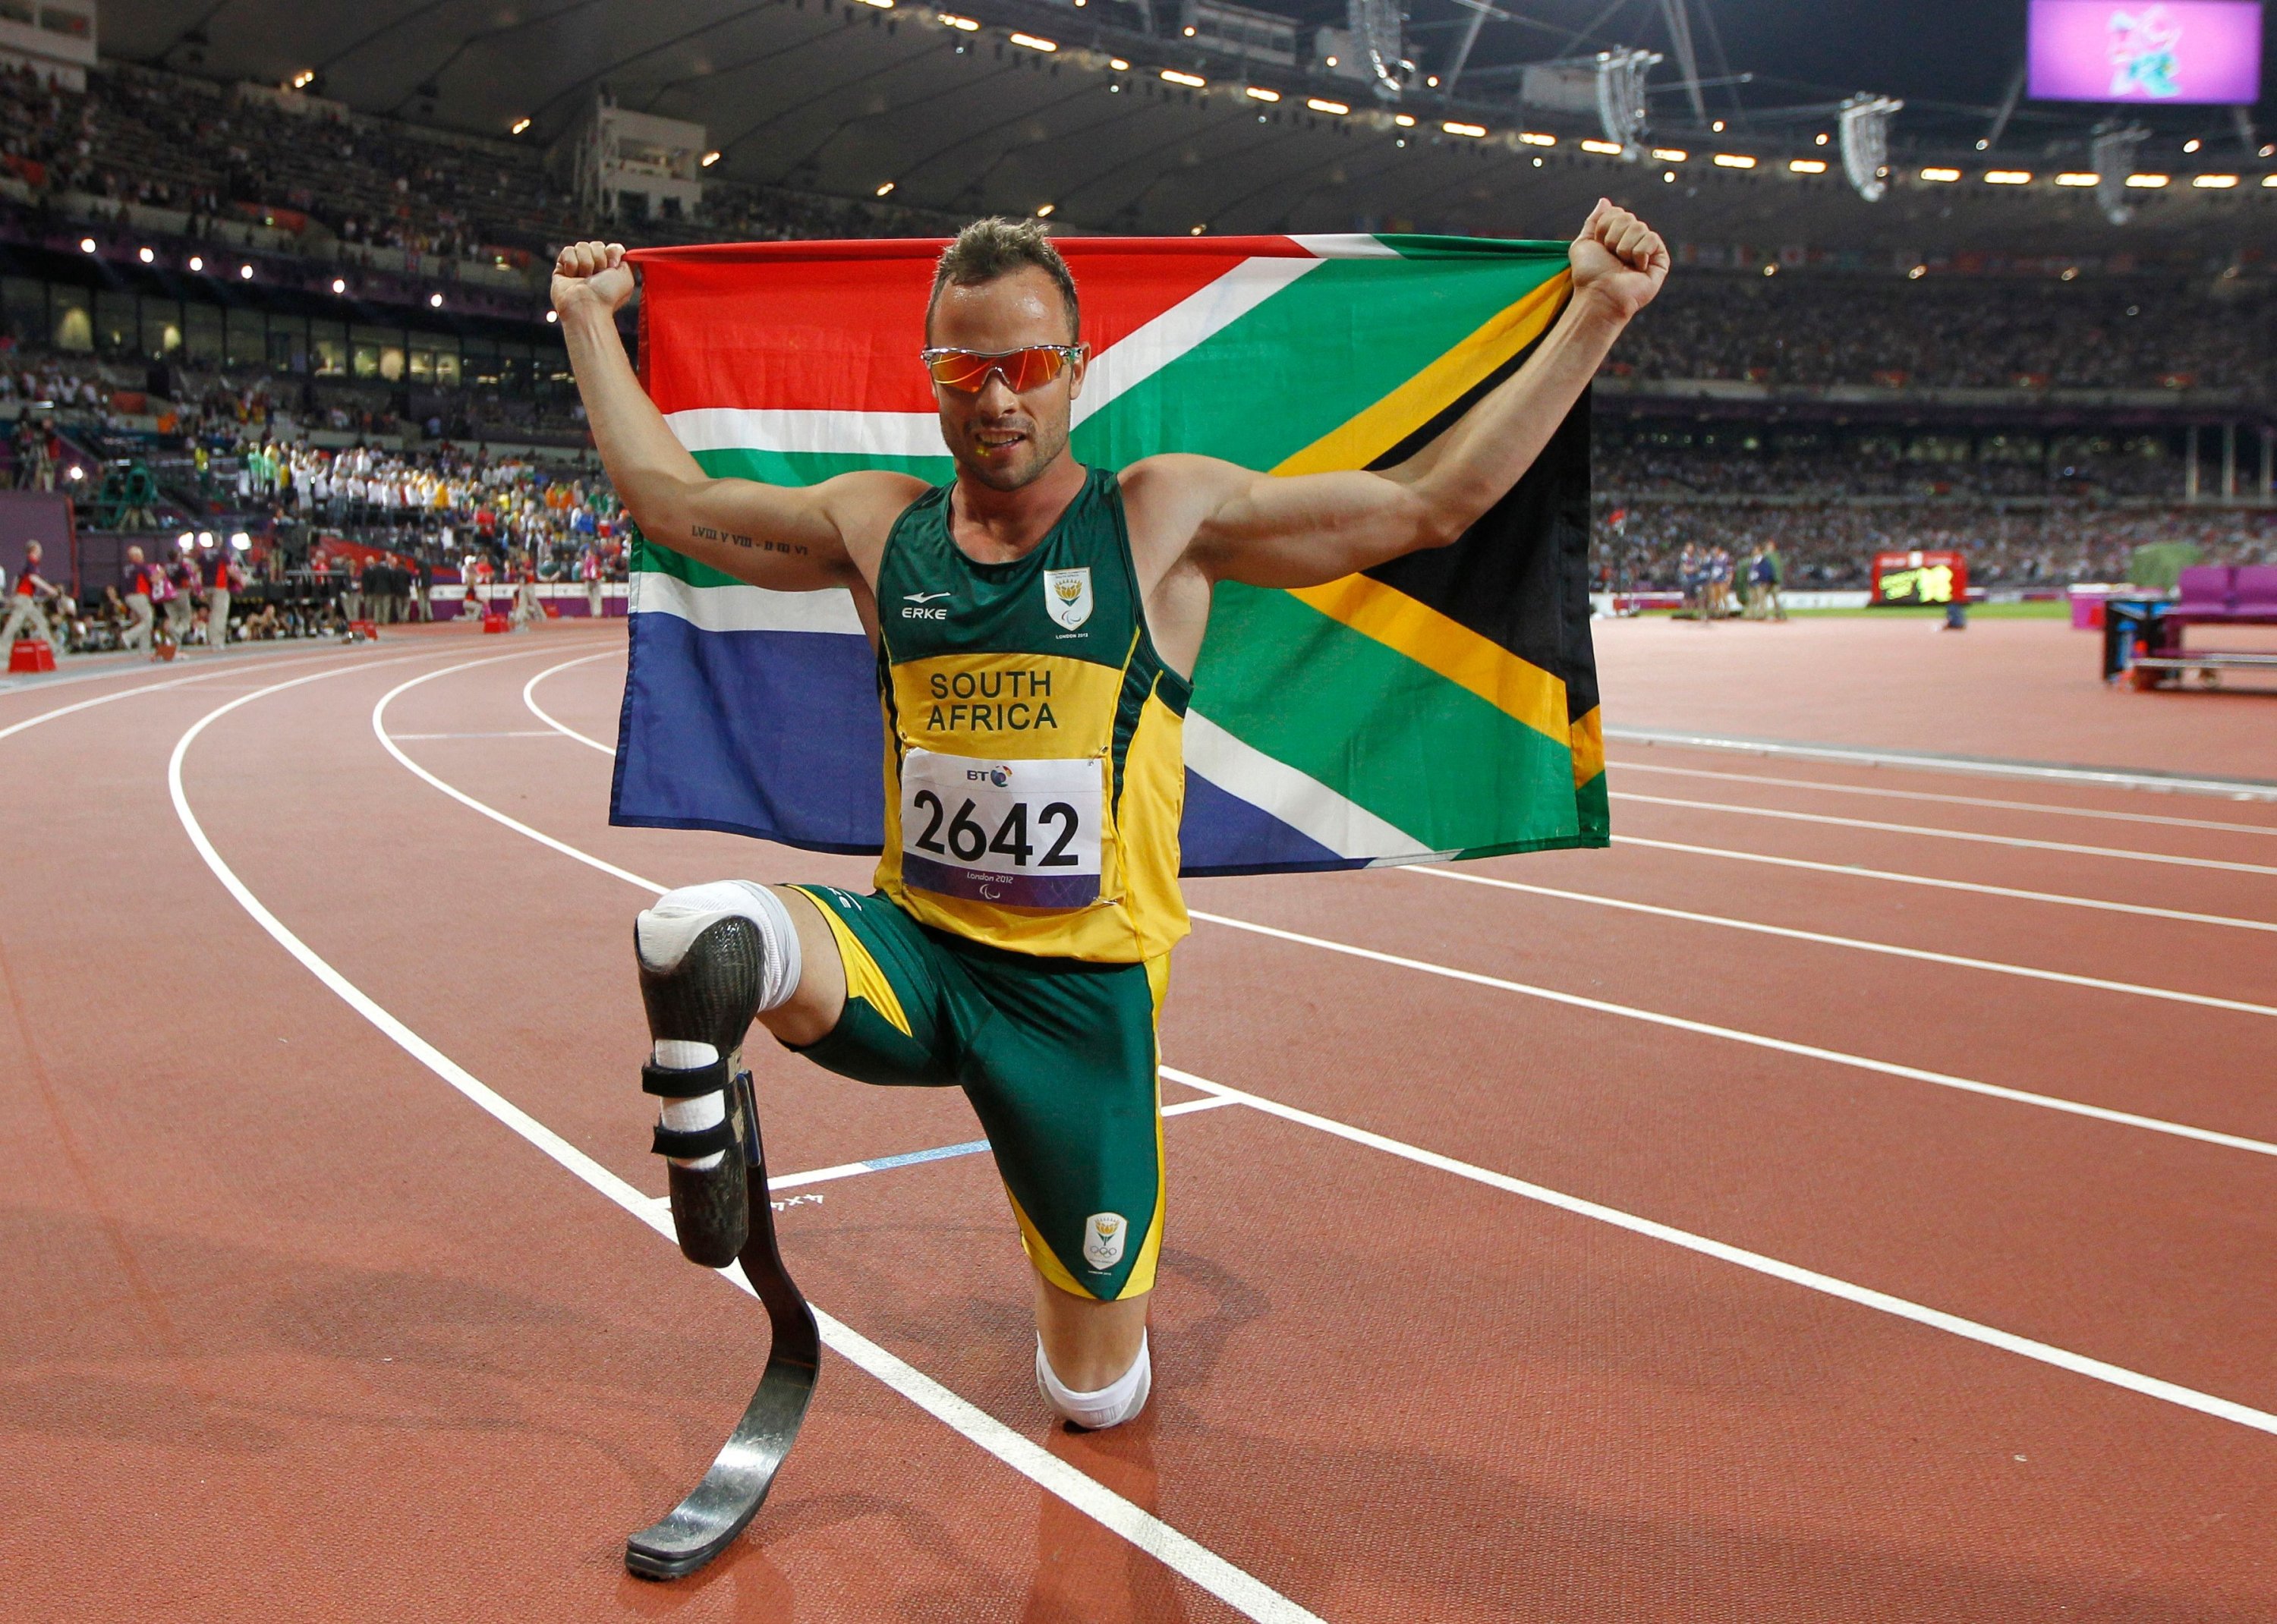 Oscar Pistorius dari Afrika Selatan berpose untuk foto dengan bendera nasional setelah memenangkan emas di final 400m-T44 putra selama kompetisi atletik di Paralympic Games London 2012, Stadion Olimpiade, London, Inggris, 9 September 2012. (AFP Photo)